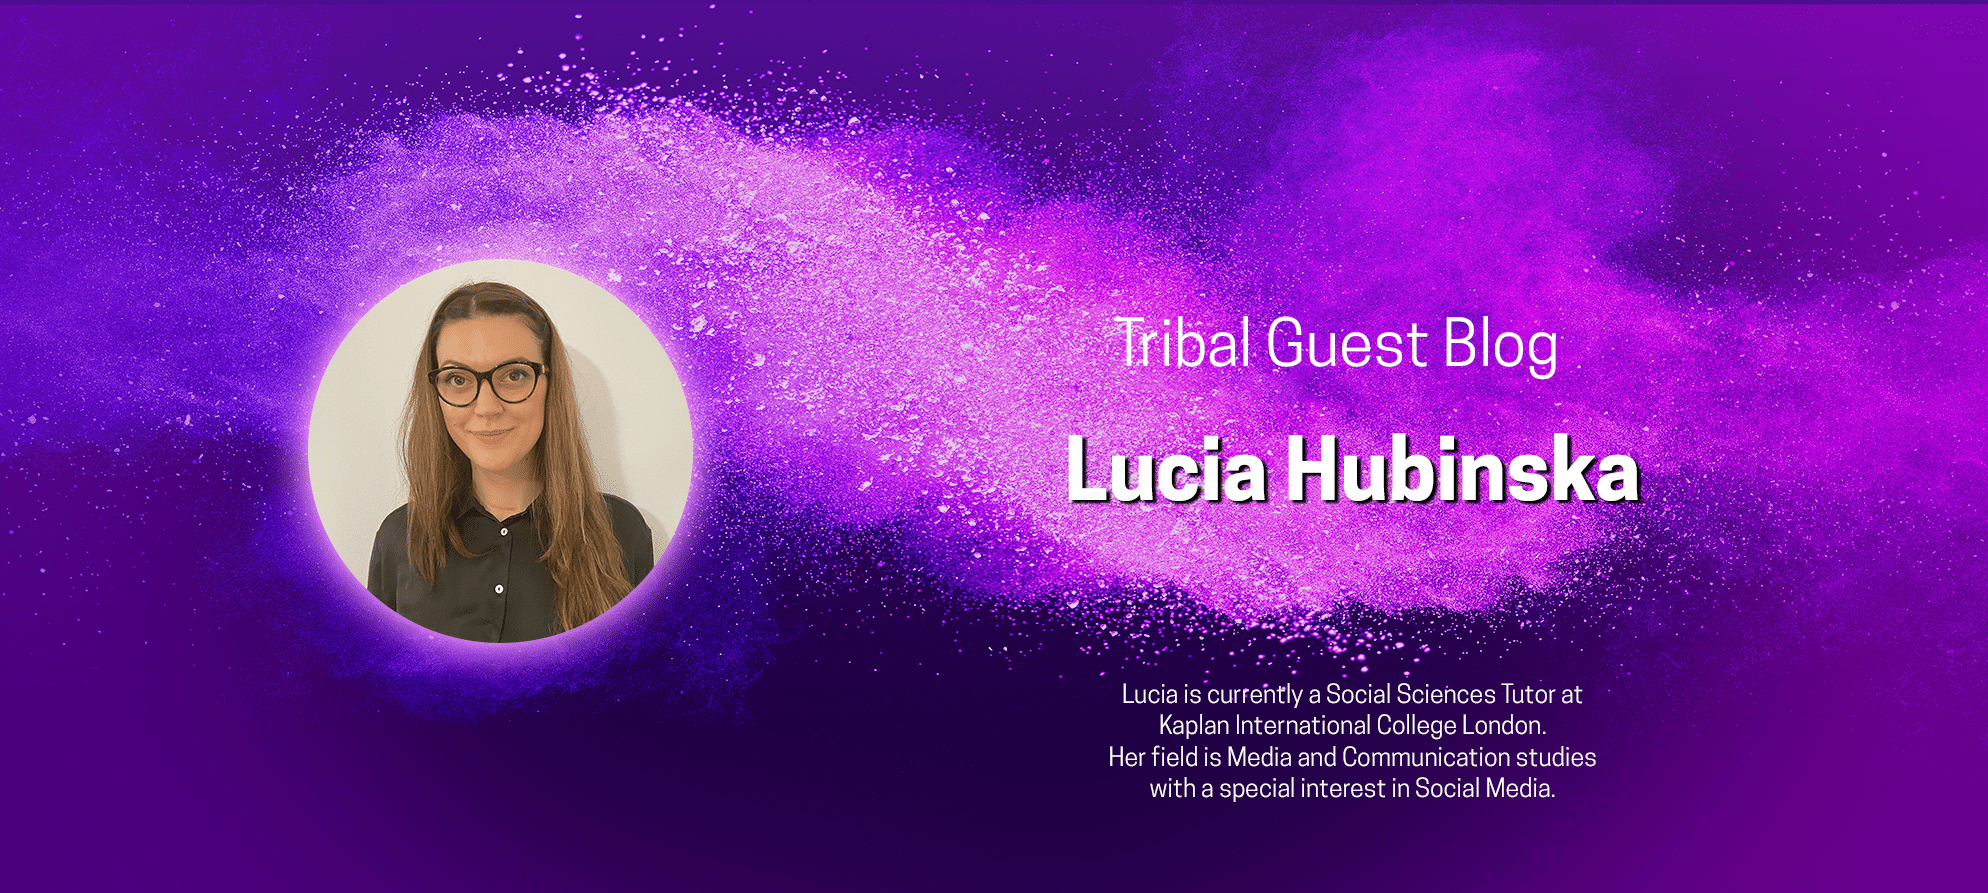 Lucia Hubinska guest blog